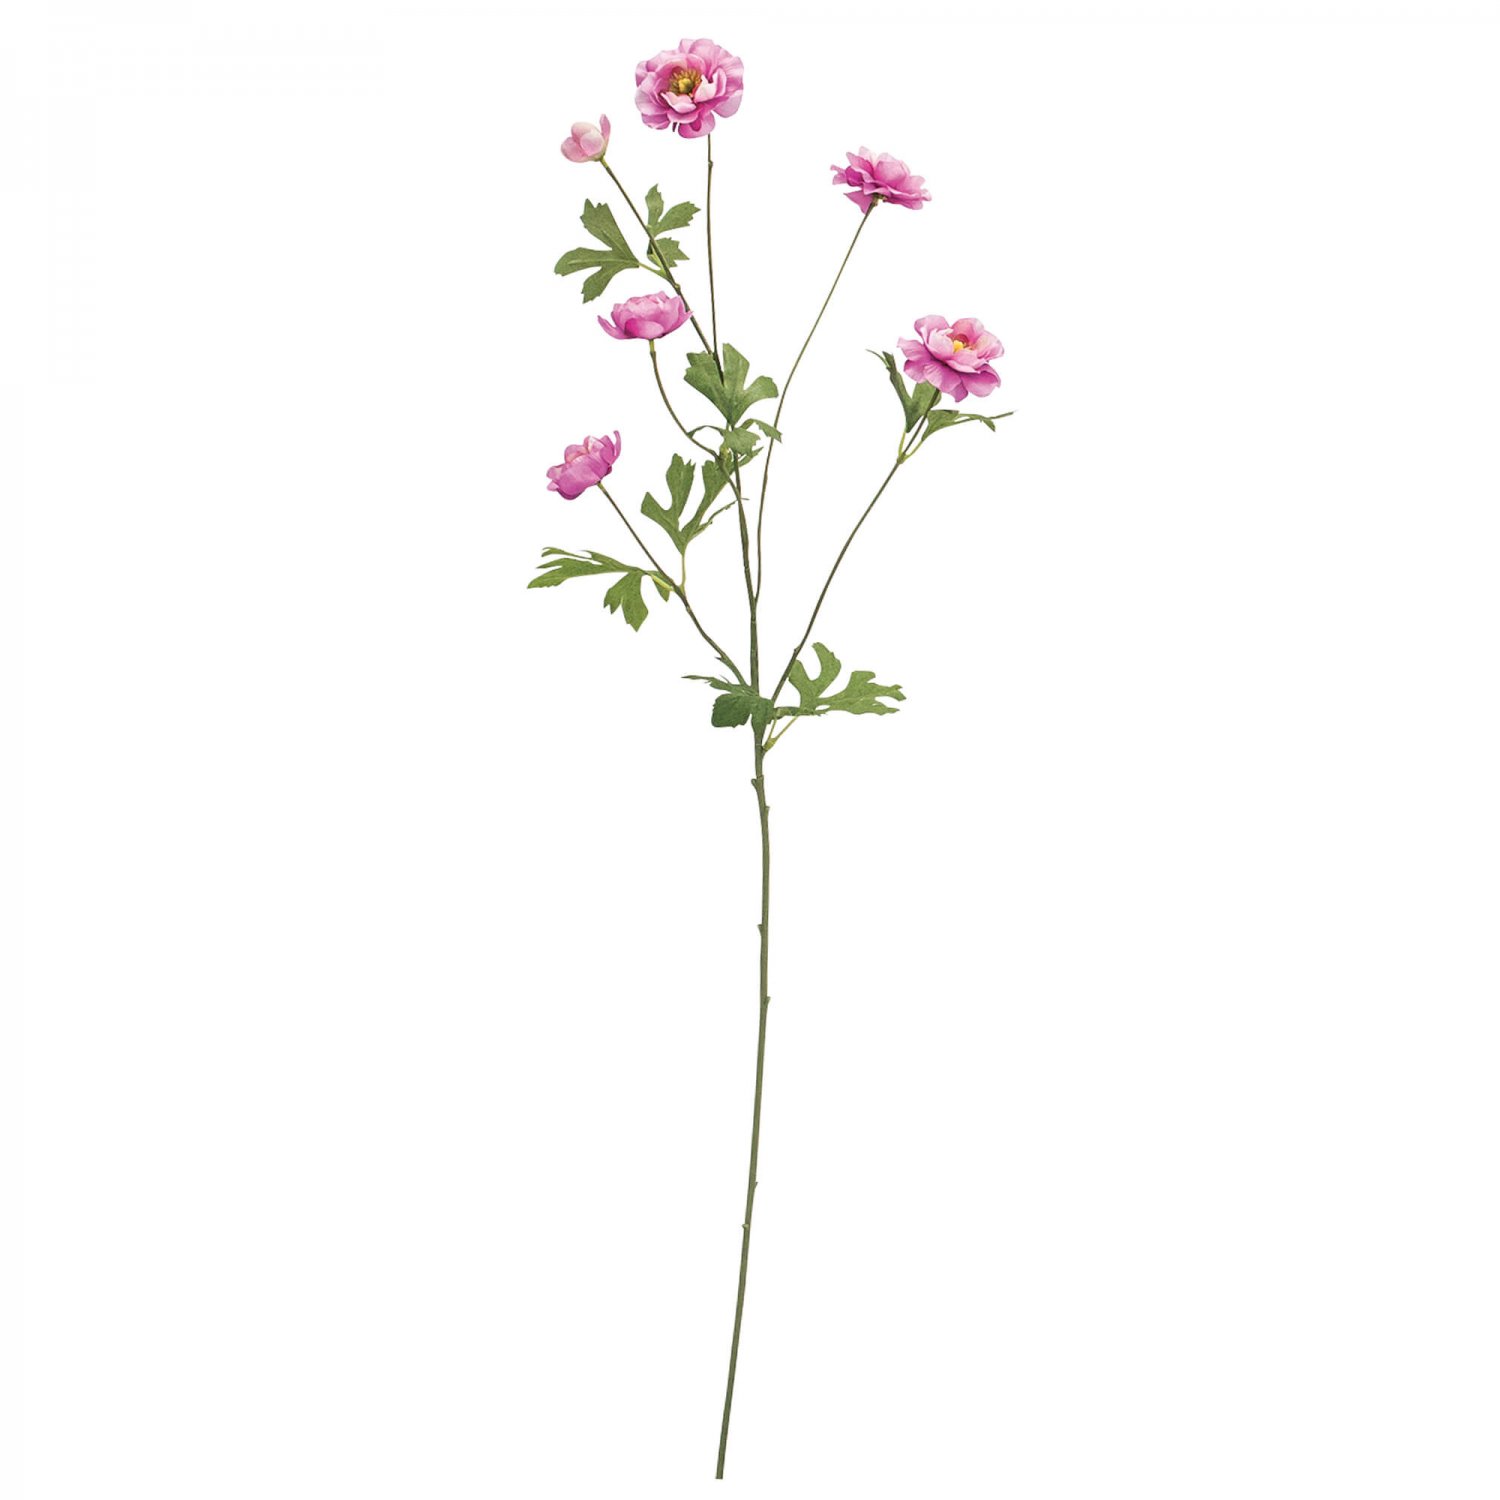 スプレー咲きラナンキュラス ピンク 単品花材 造花 アーティフィシャルフラワー 